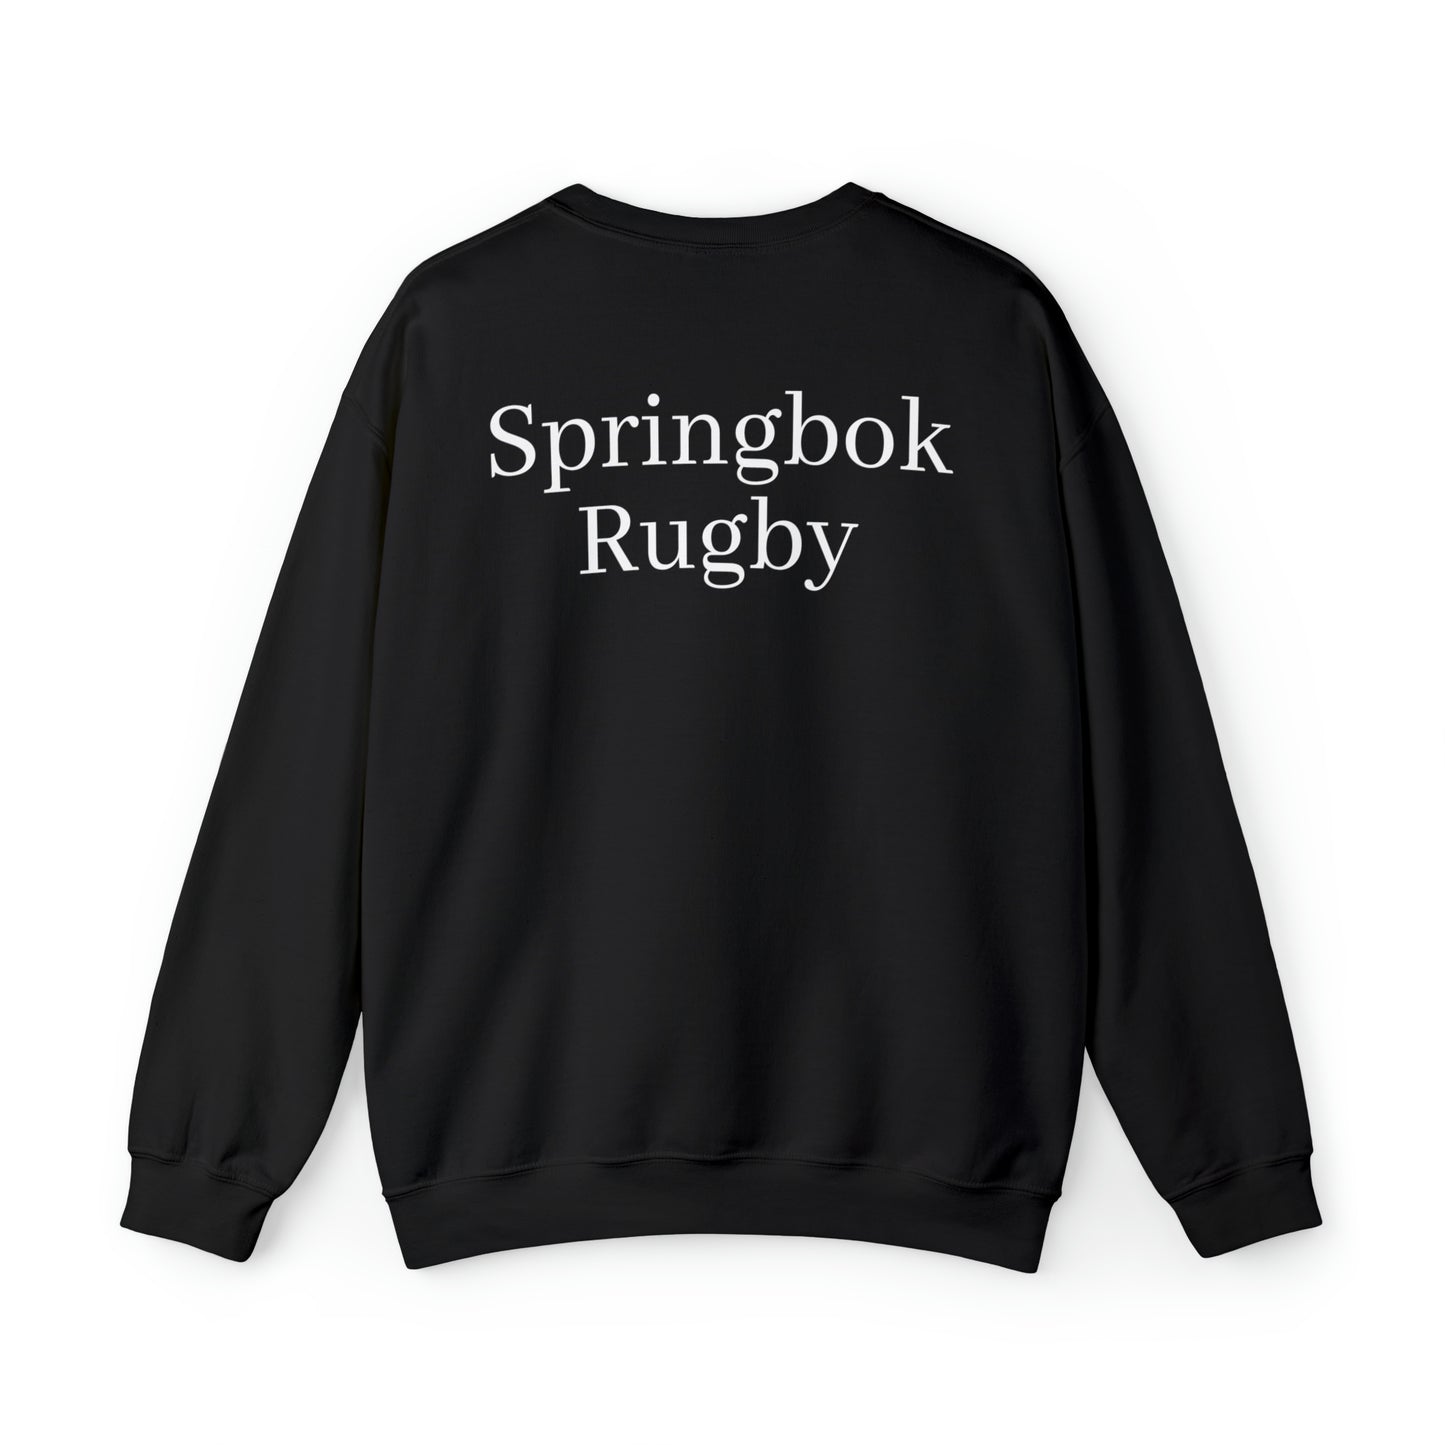 Springboks lifting RWC - black sweatshirt